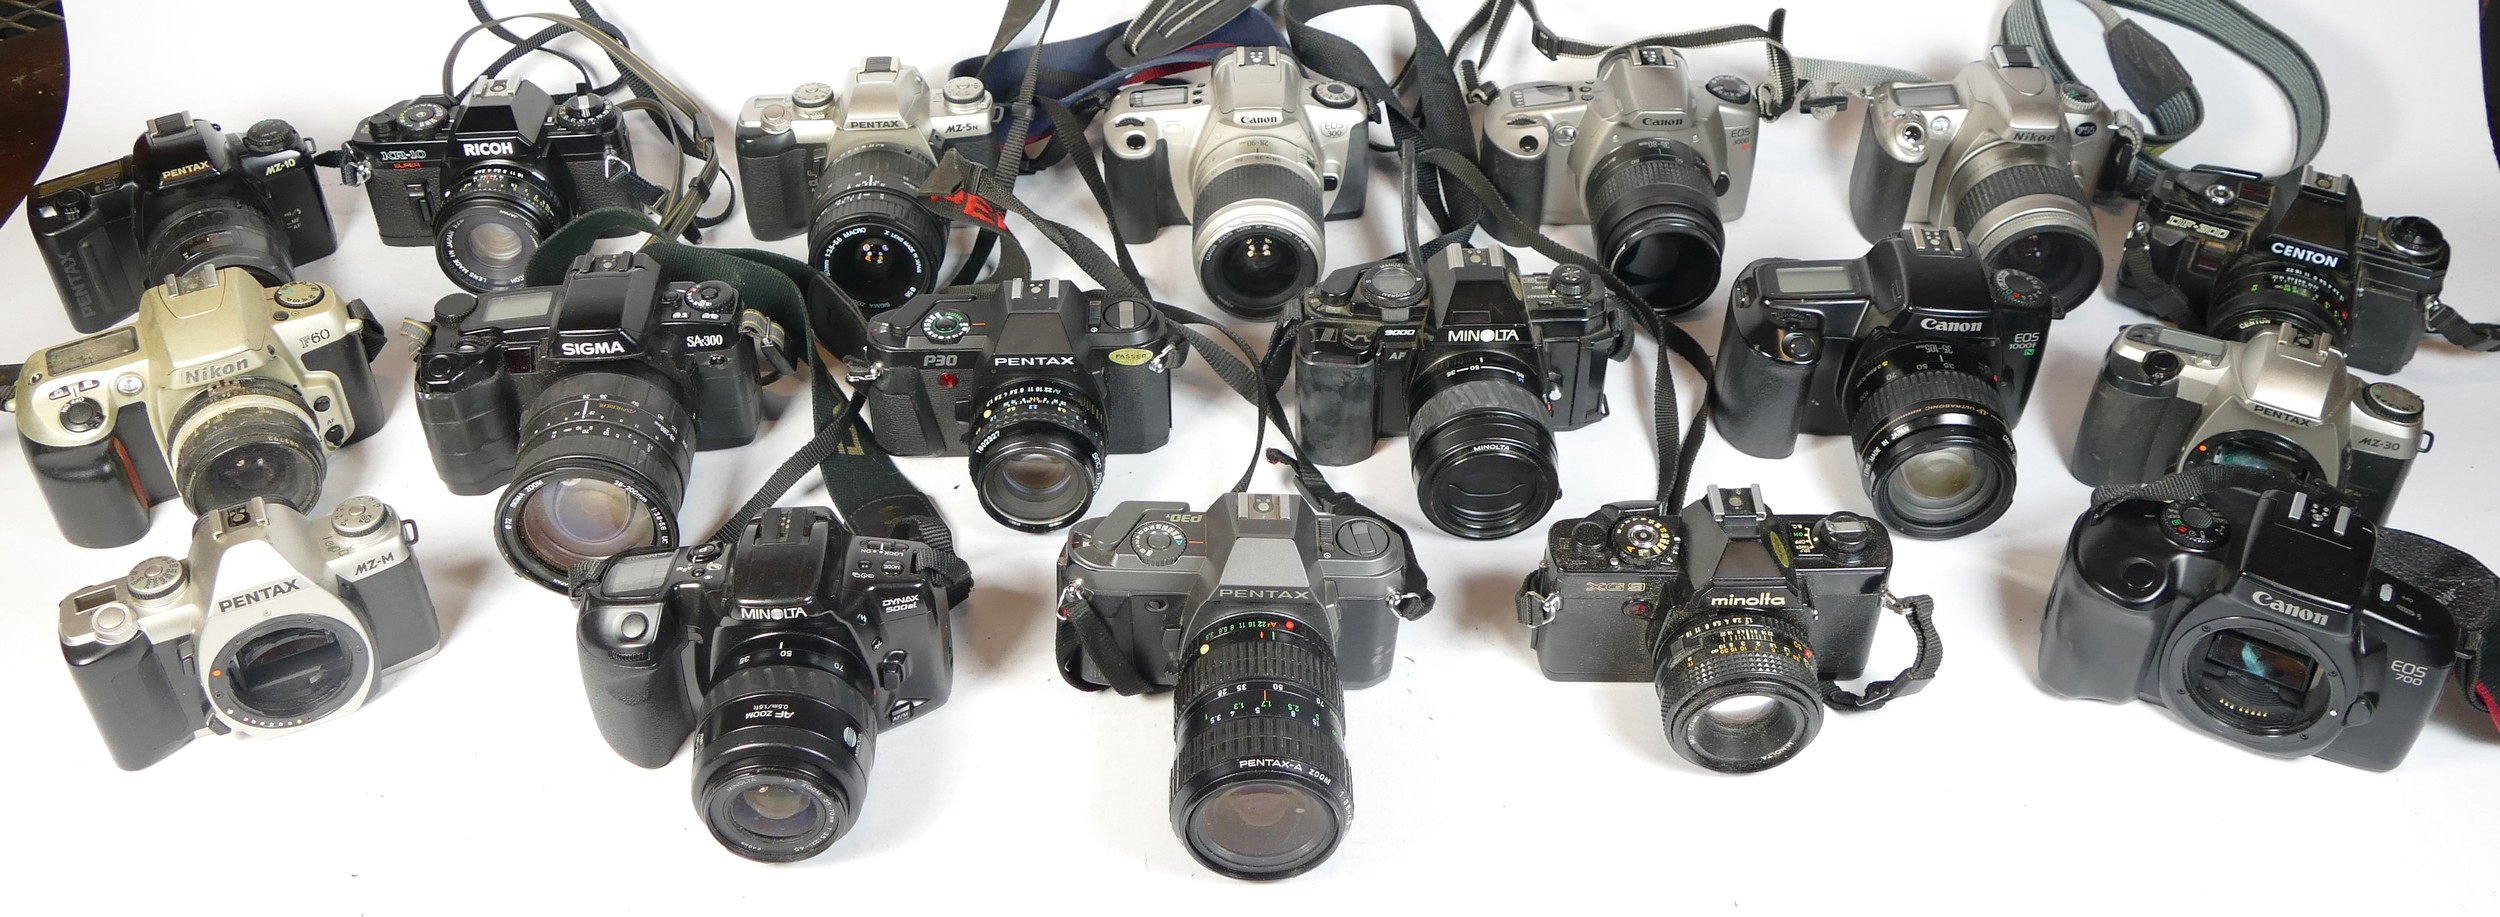 Twenty four SLR vintage film cameras to include a Pentax MZ-M, a Minolta 300si, a Carena 100sx and a